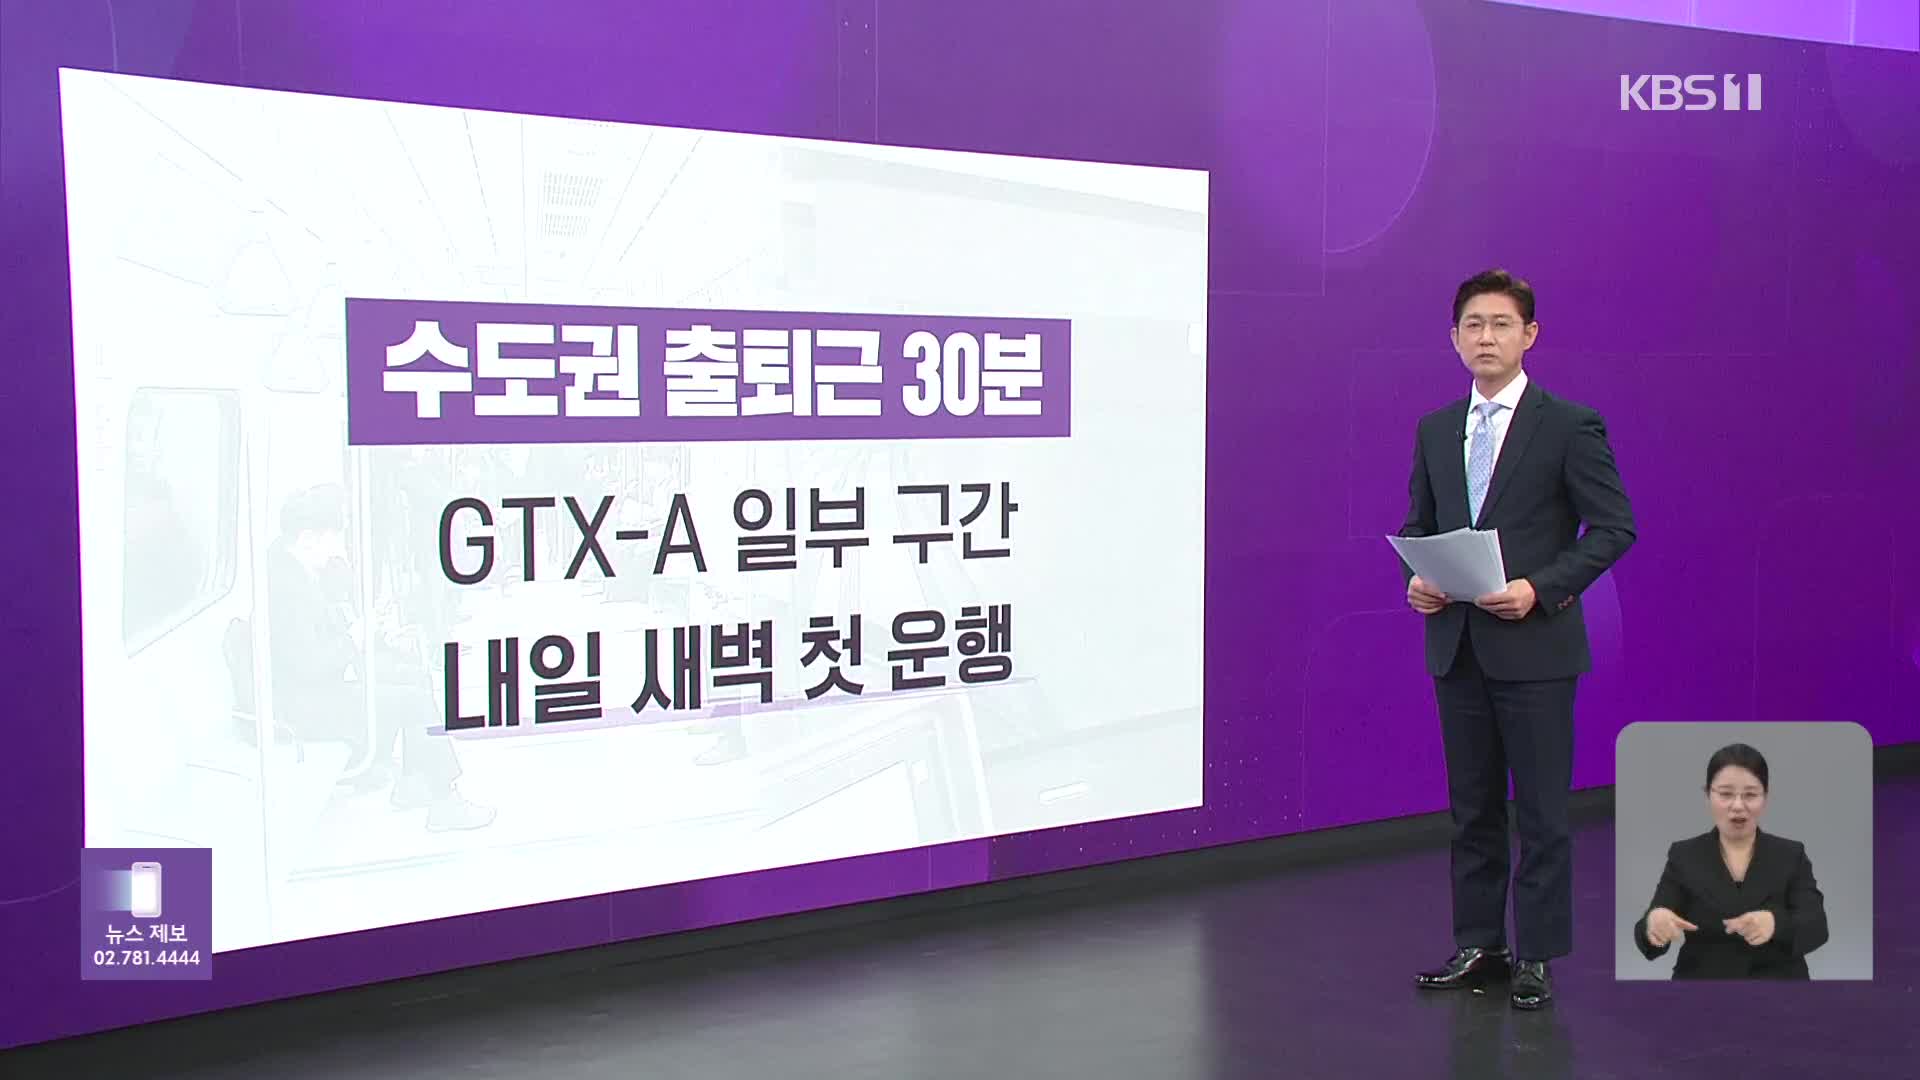 GTX-A 내일 개통 “수서~동탄 20분”